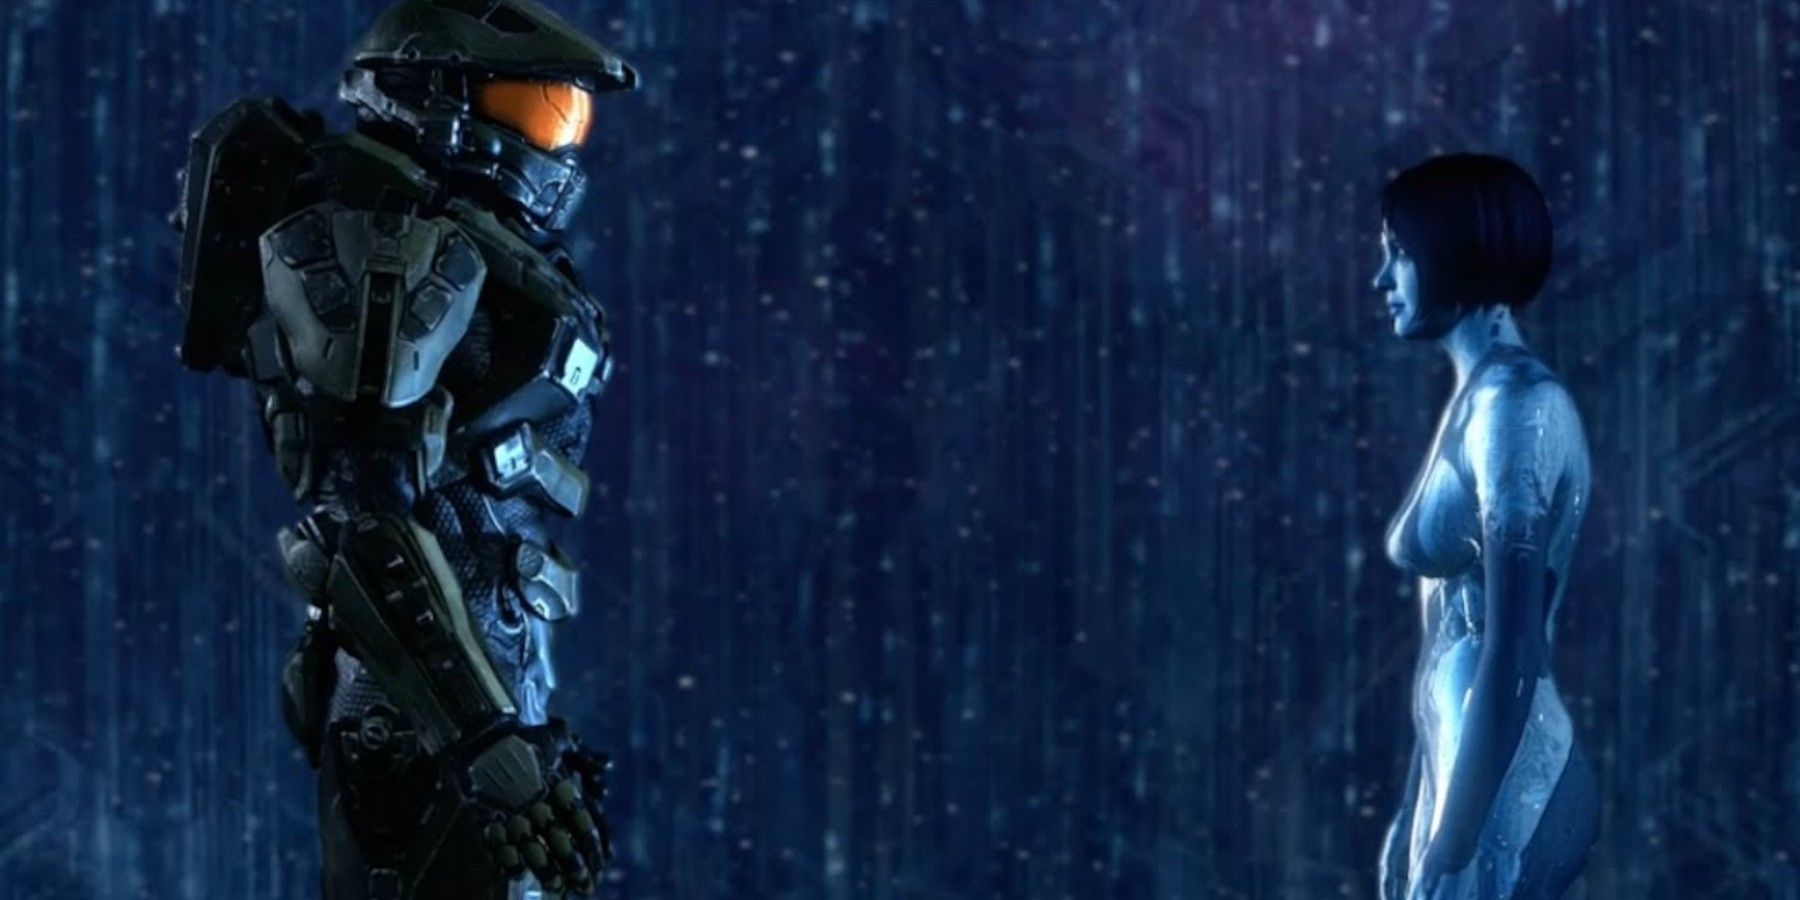 Halo 4 Cortana and Chief